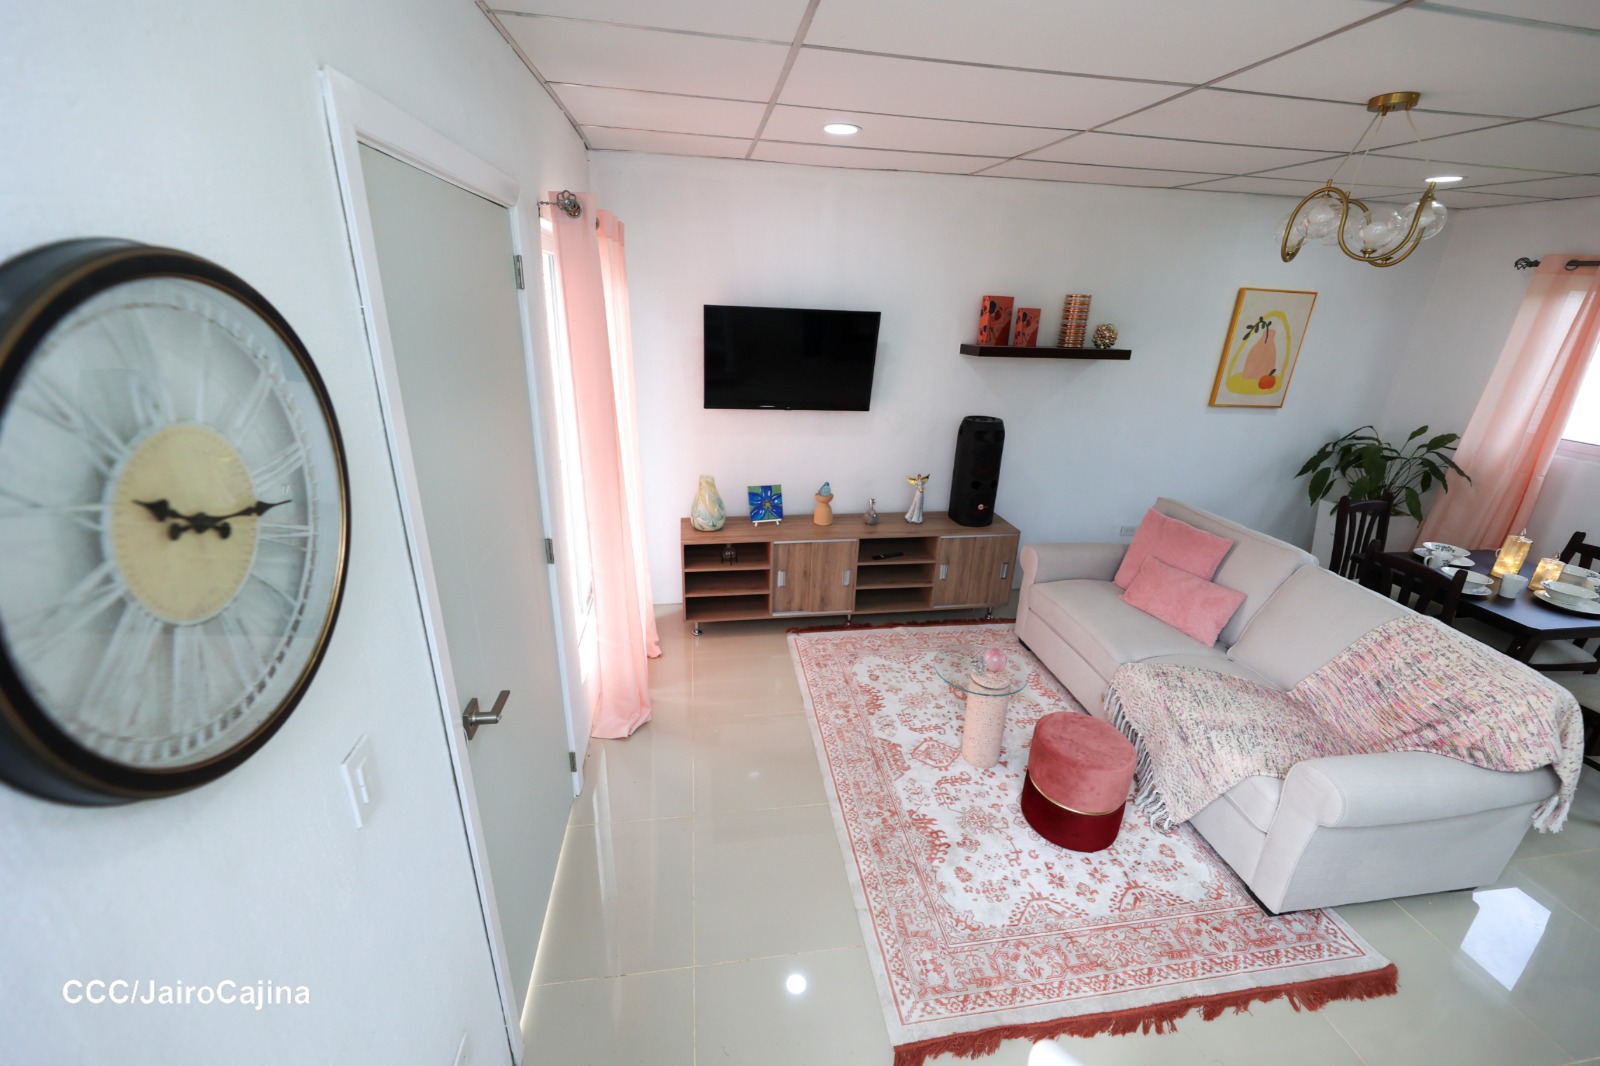 Apartamentos Roberto Clemente en Managua despierta interés y dudas